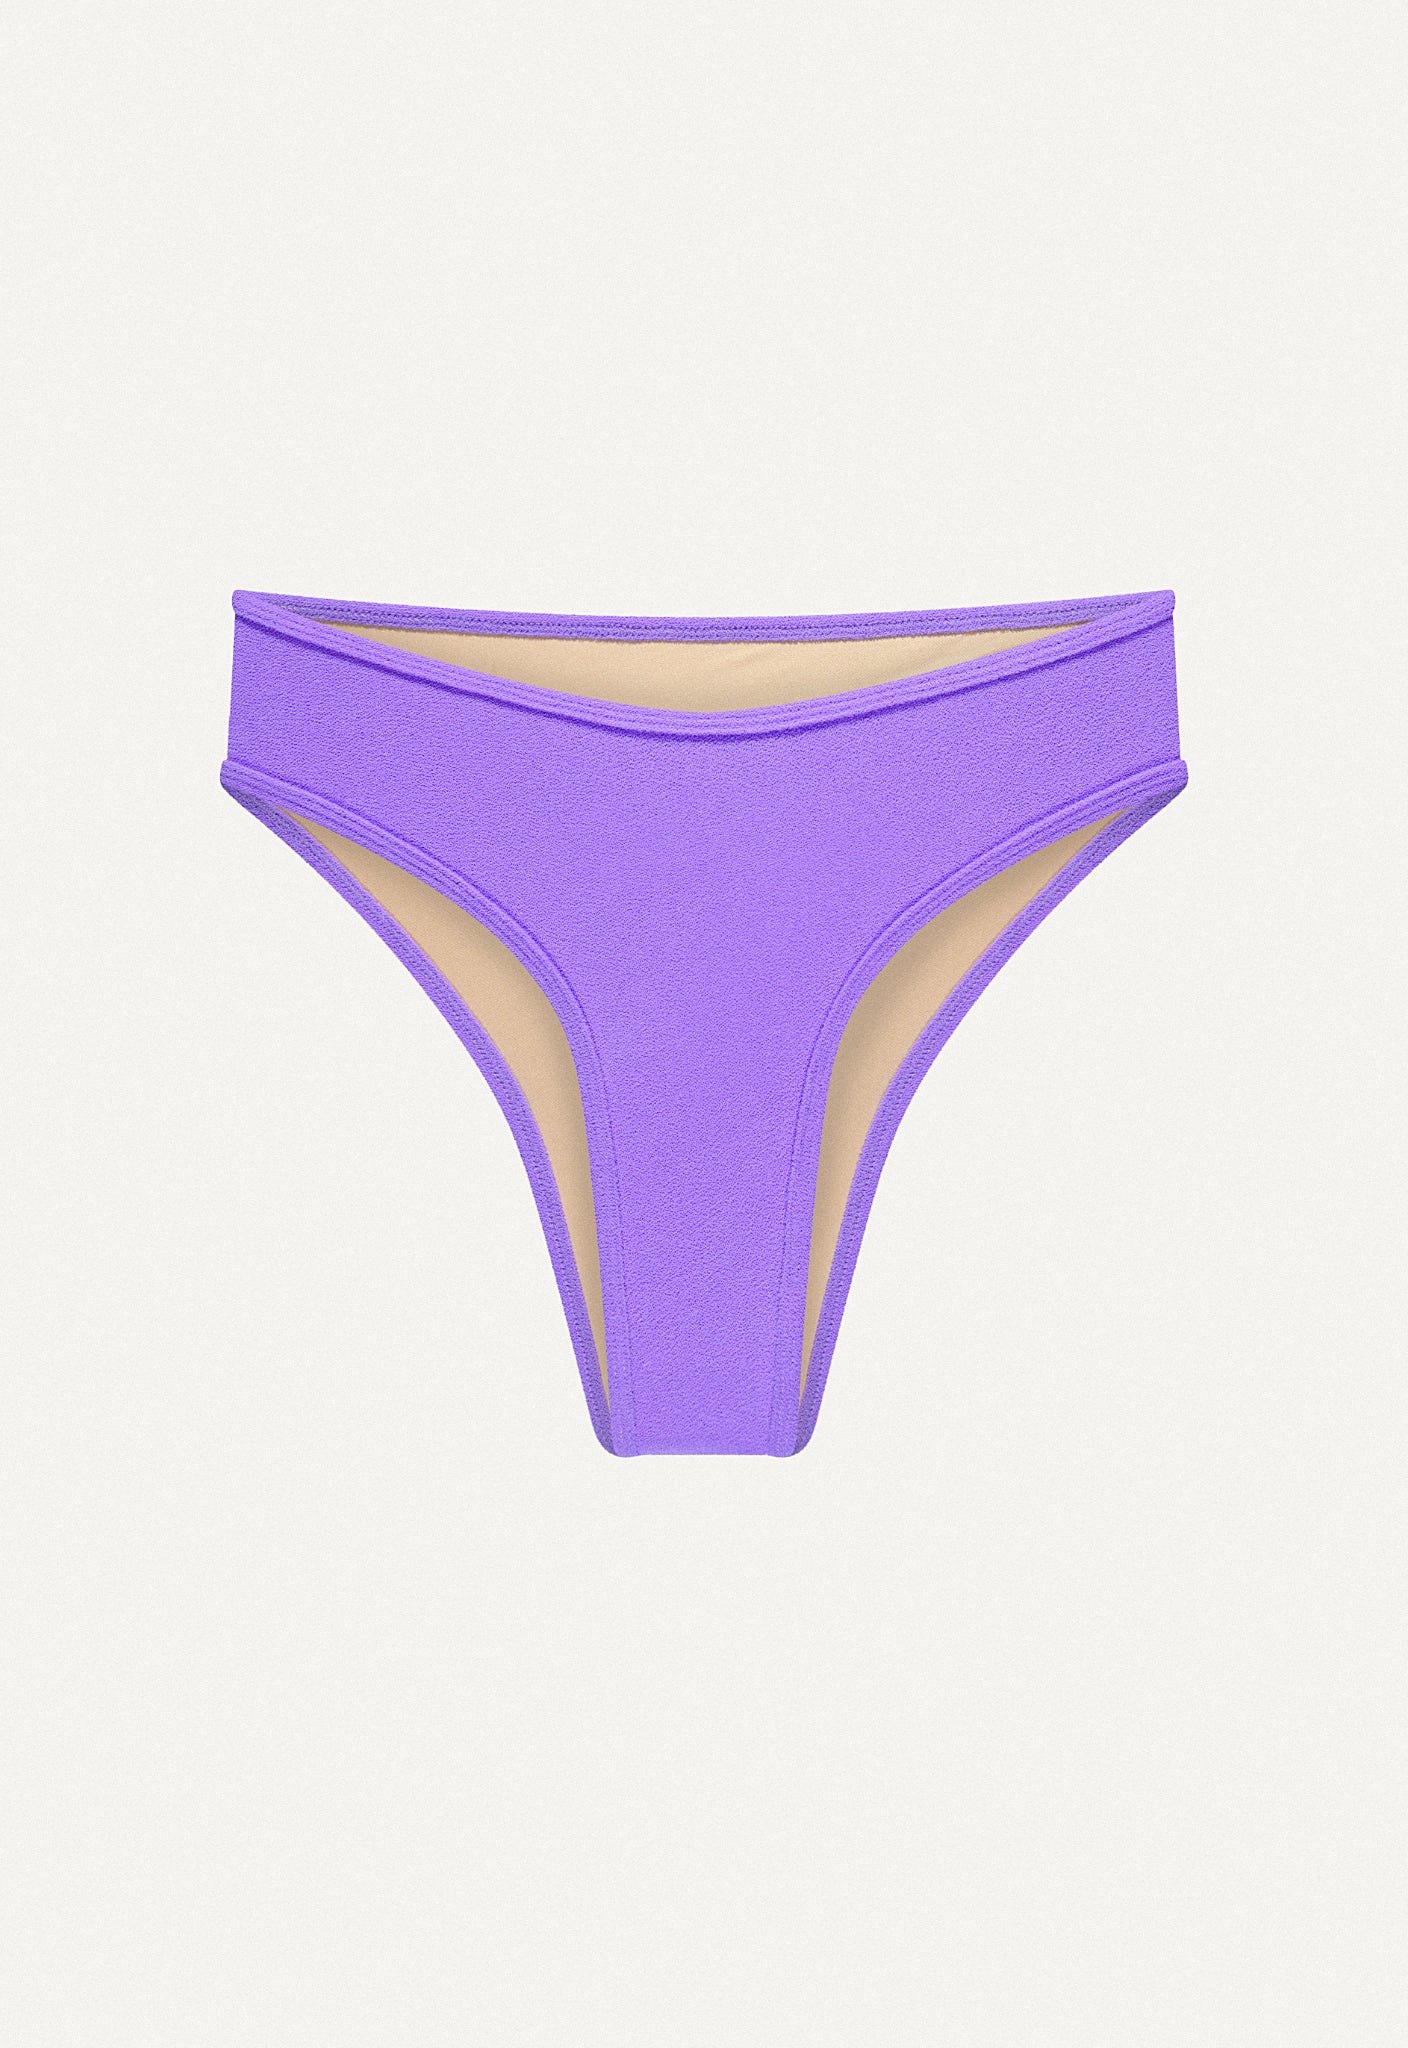 Bikini Bottom "Calima" in lilac terry